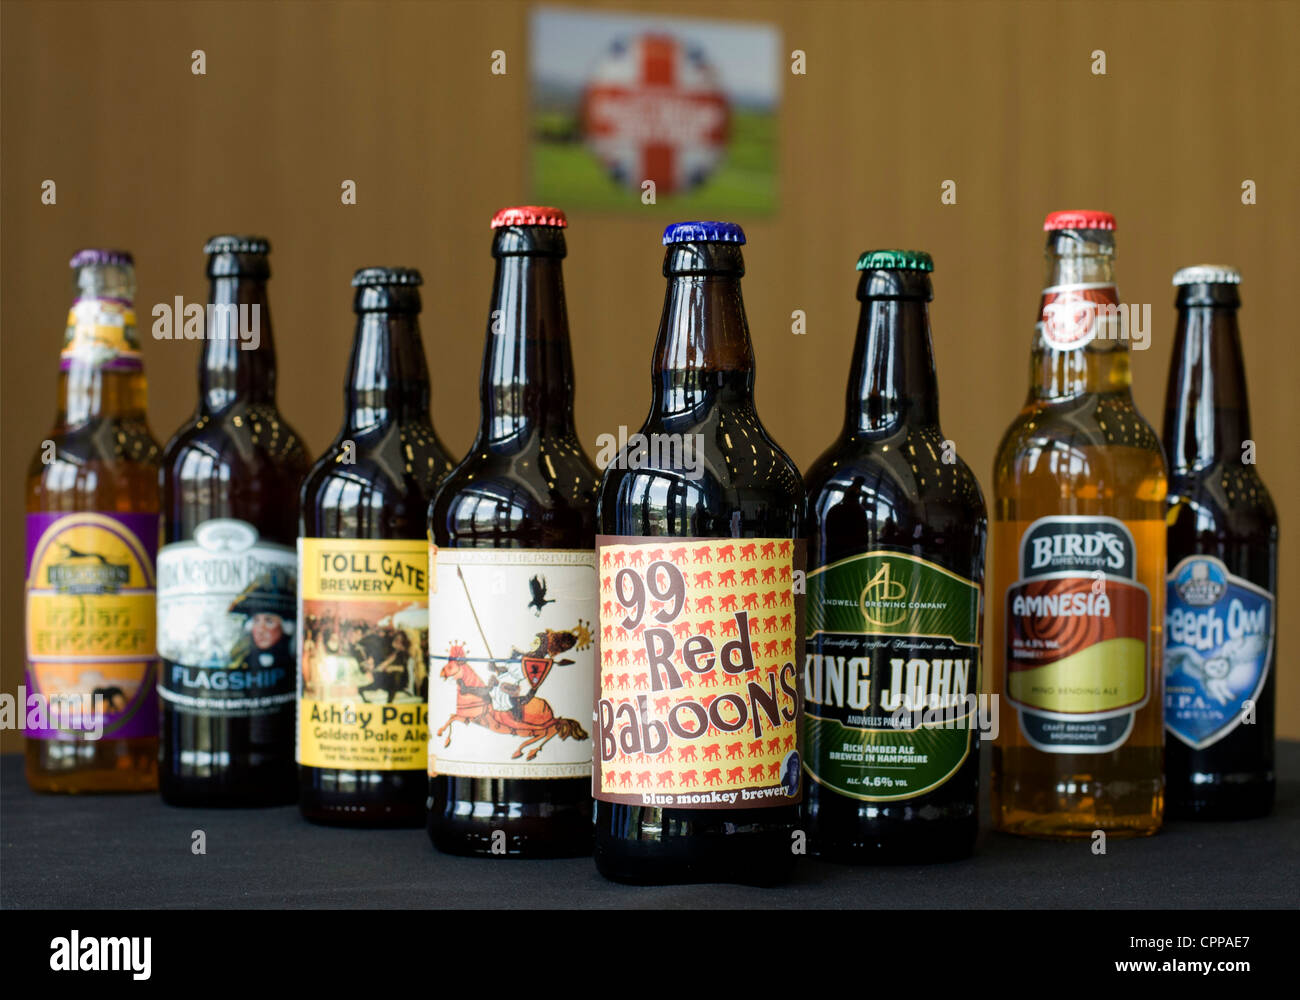 Flaschen Real Ale Bier gebraut in England. Die Brauereien, die sie machen geben ihnen unverwechselbare Namen und bunte Aufkleber. Stockfoto